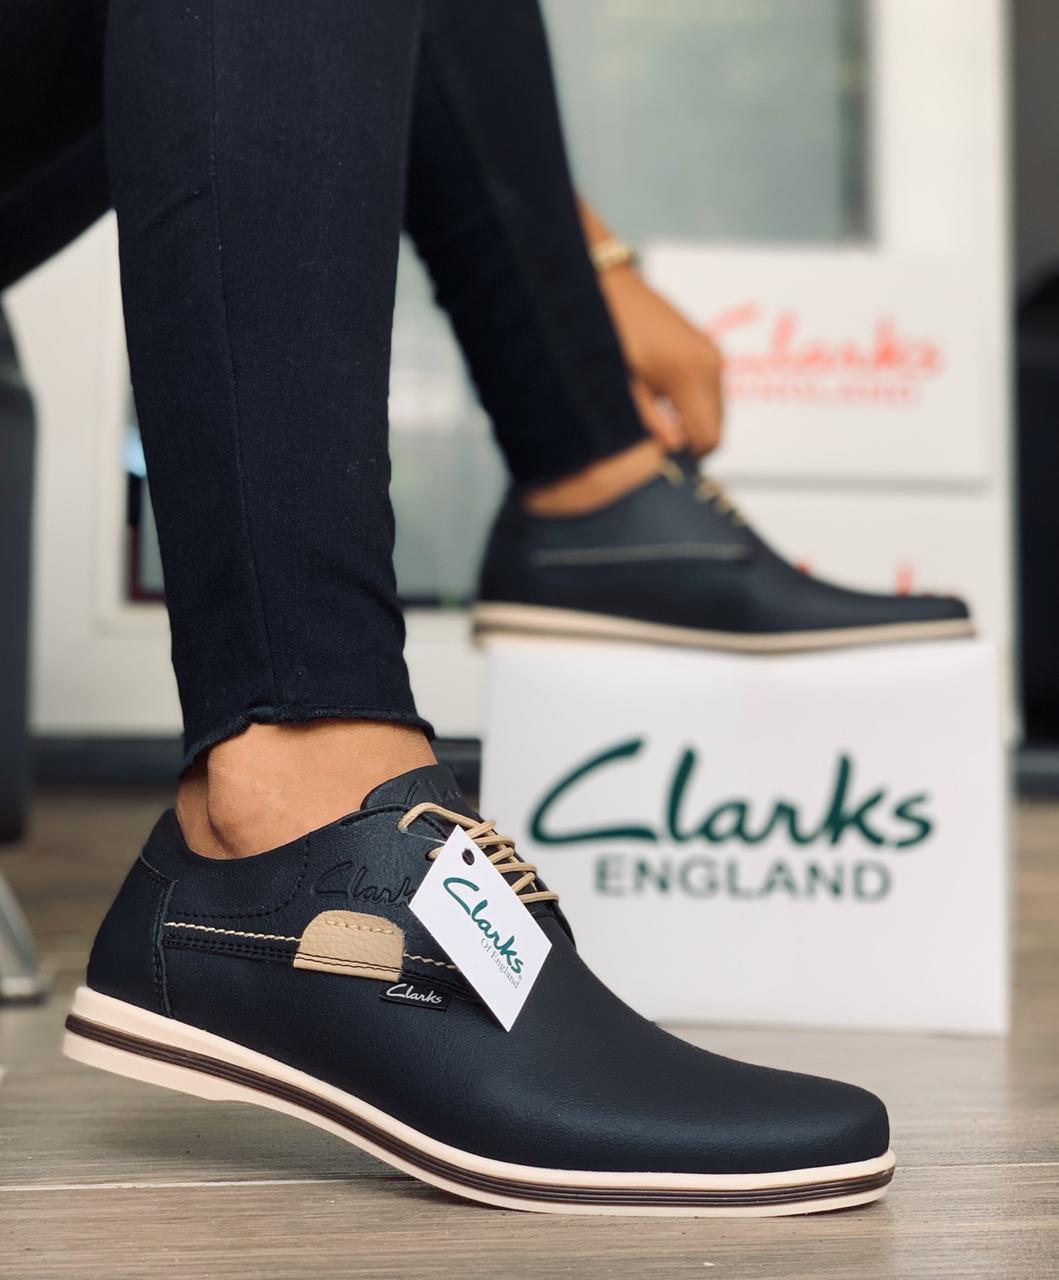 Un financiero chino compró Clarks, la tradicional fábrica británica de calzado